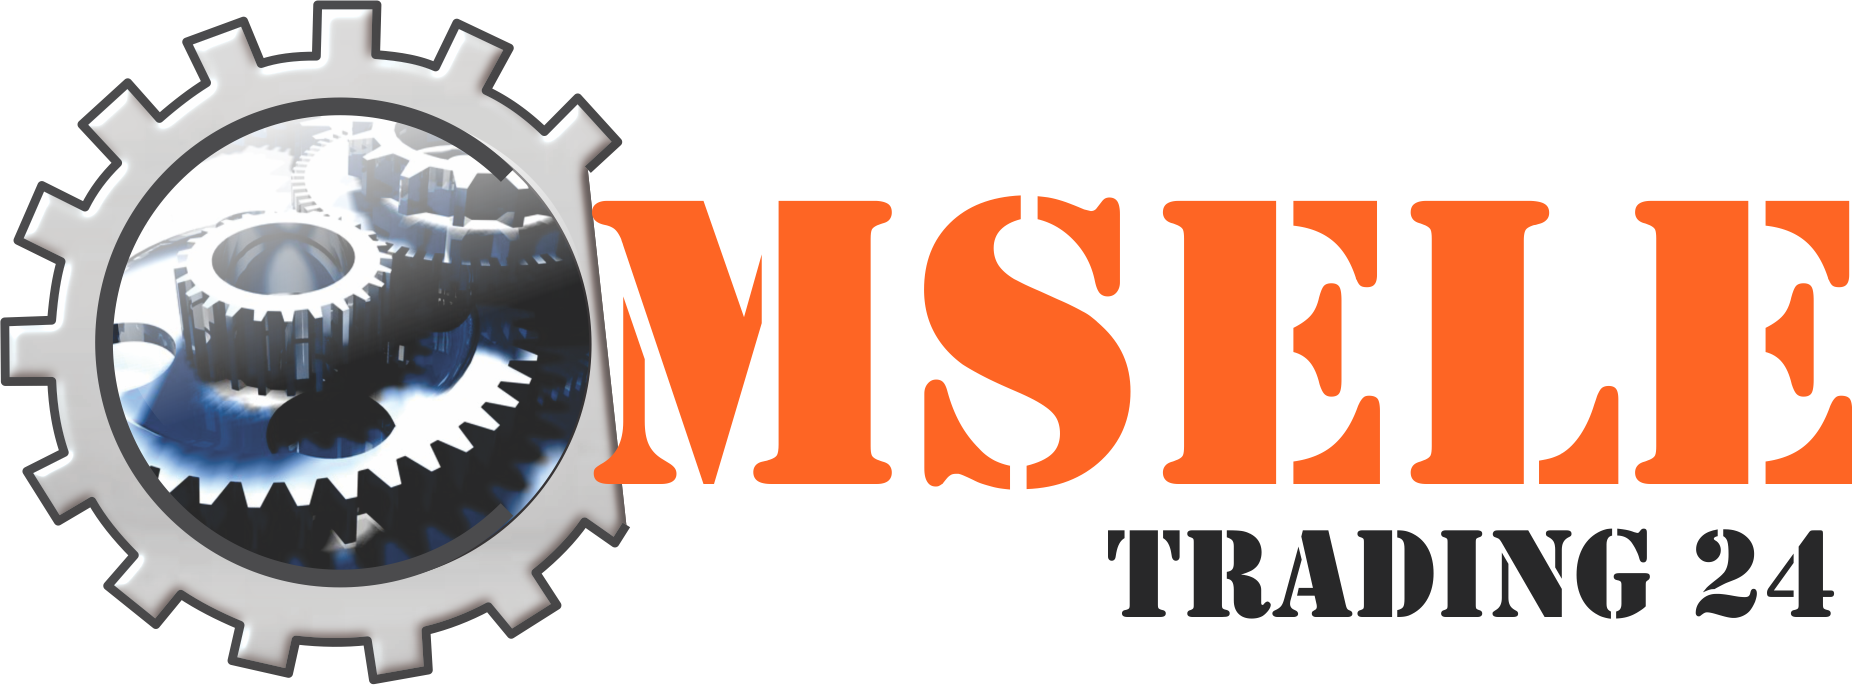 MSELE Trading 24 Logo